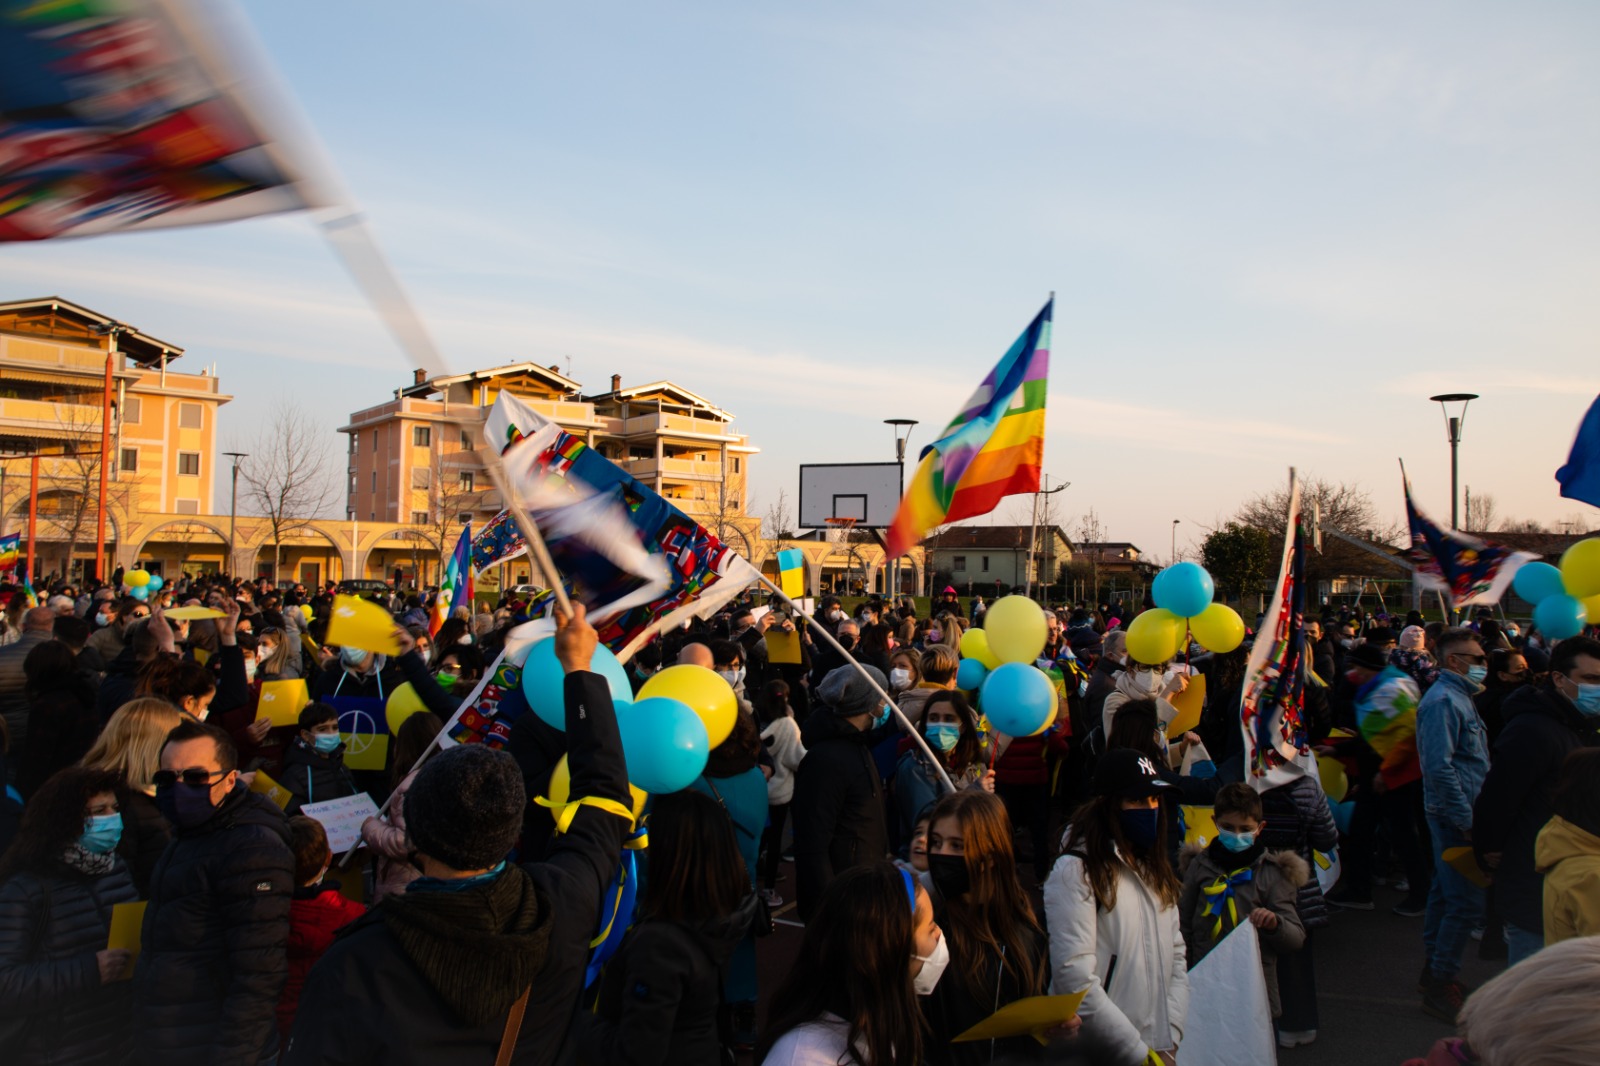 Marcia della pace a sostegno dell'Ucraina - 6 marzo 2022